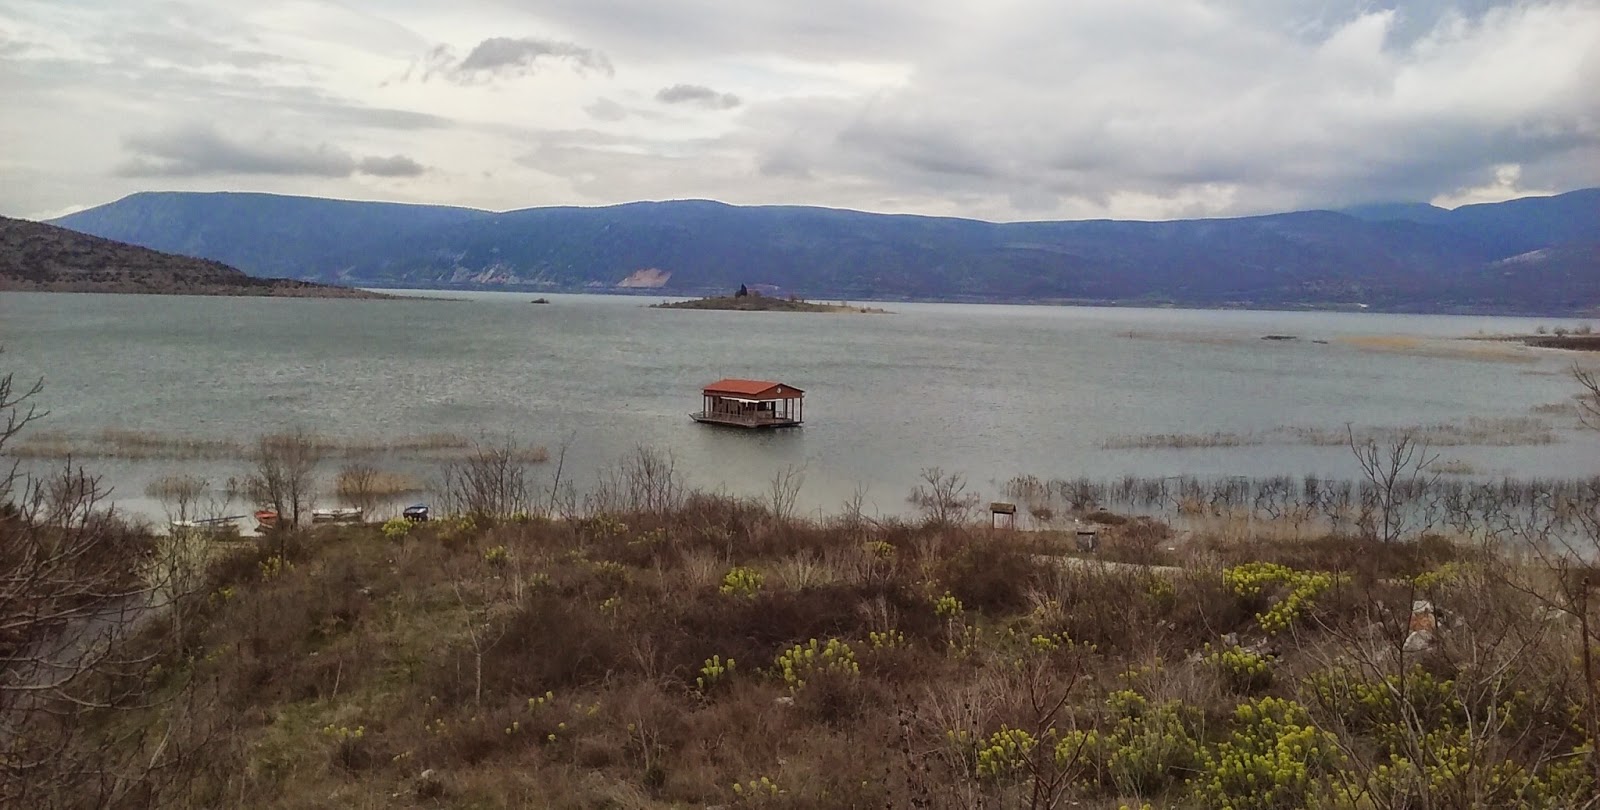 Ανησυχία στη λίμνη Βεγορίτιδα: Μεγάλη ποσότητα φυτοπλαγκτόν προκάλεσε δυσχρωματισμό των υδάτων